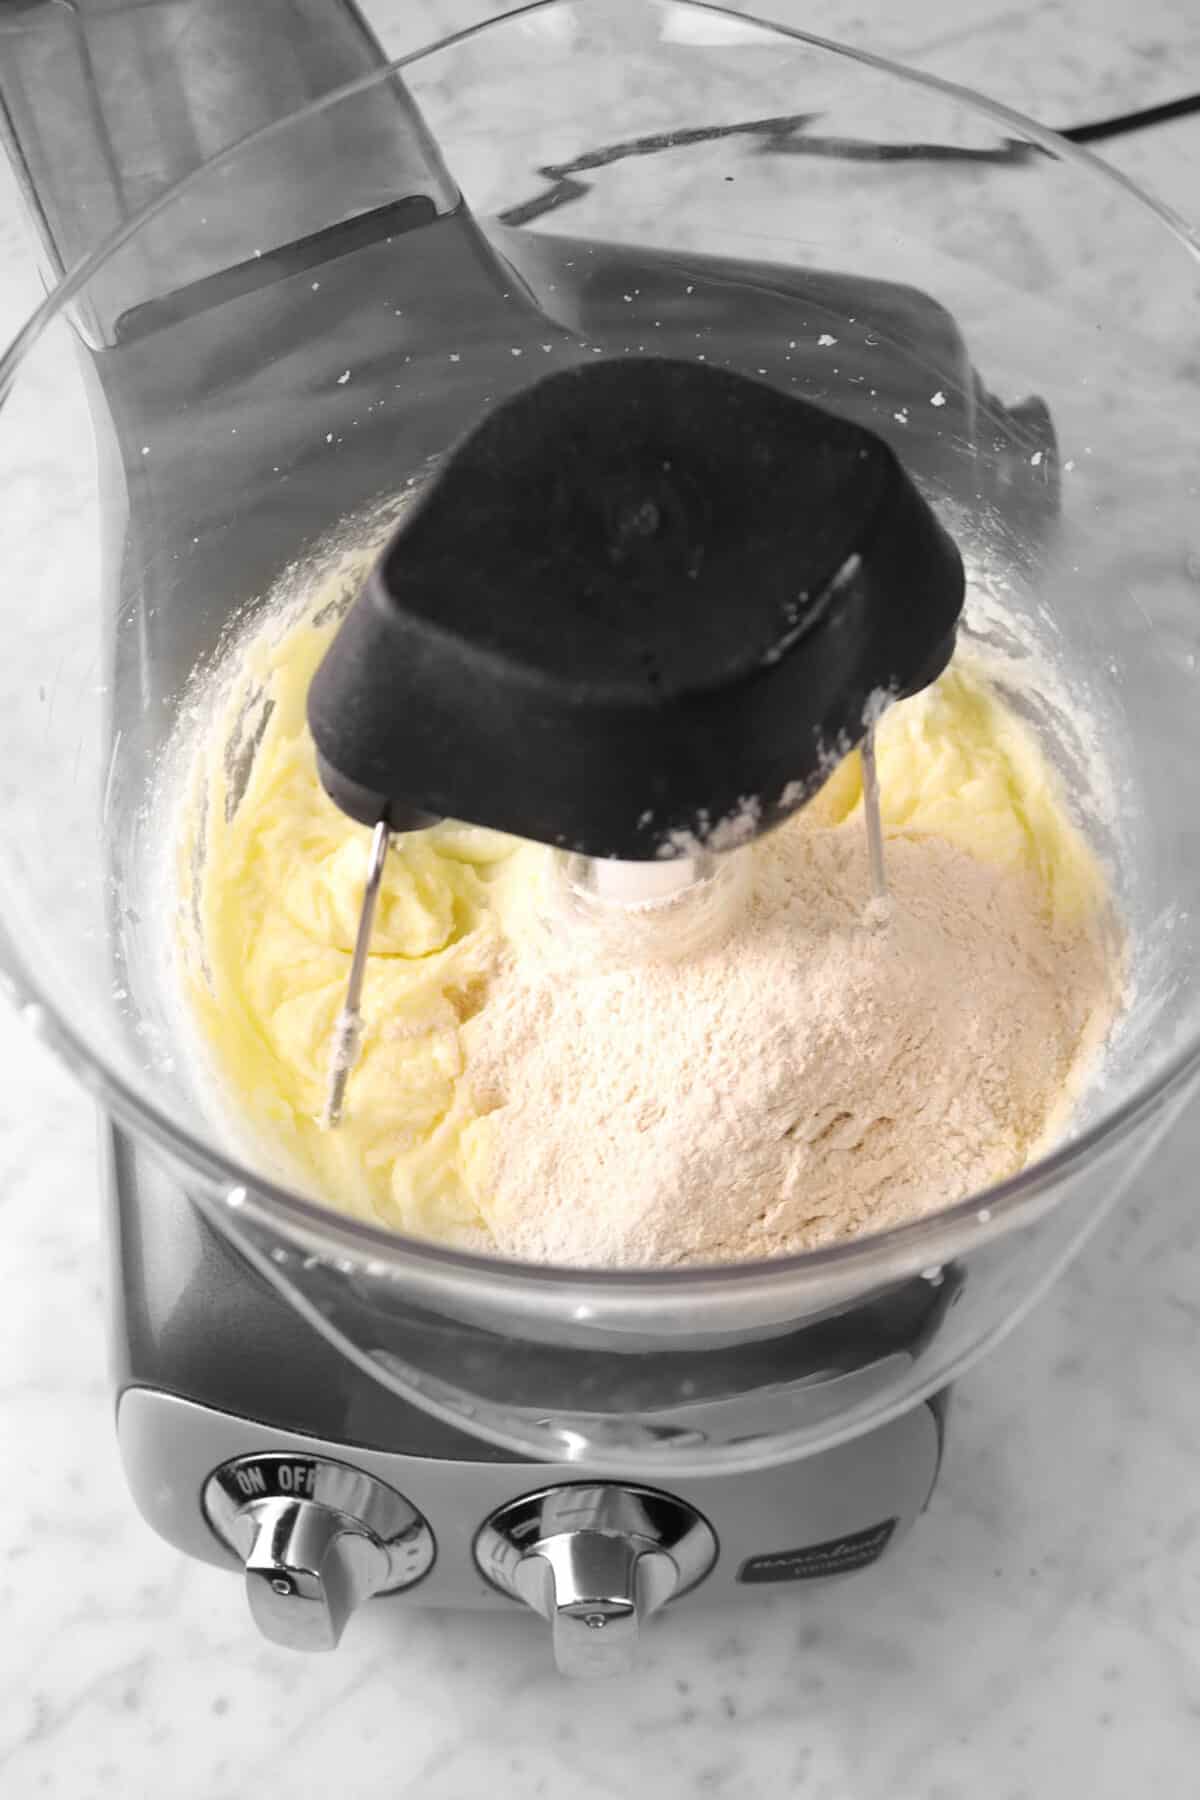 flour mixture added to butter mixture